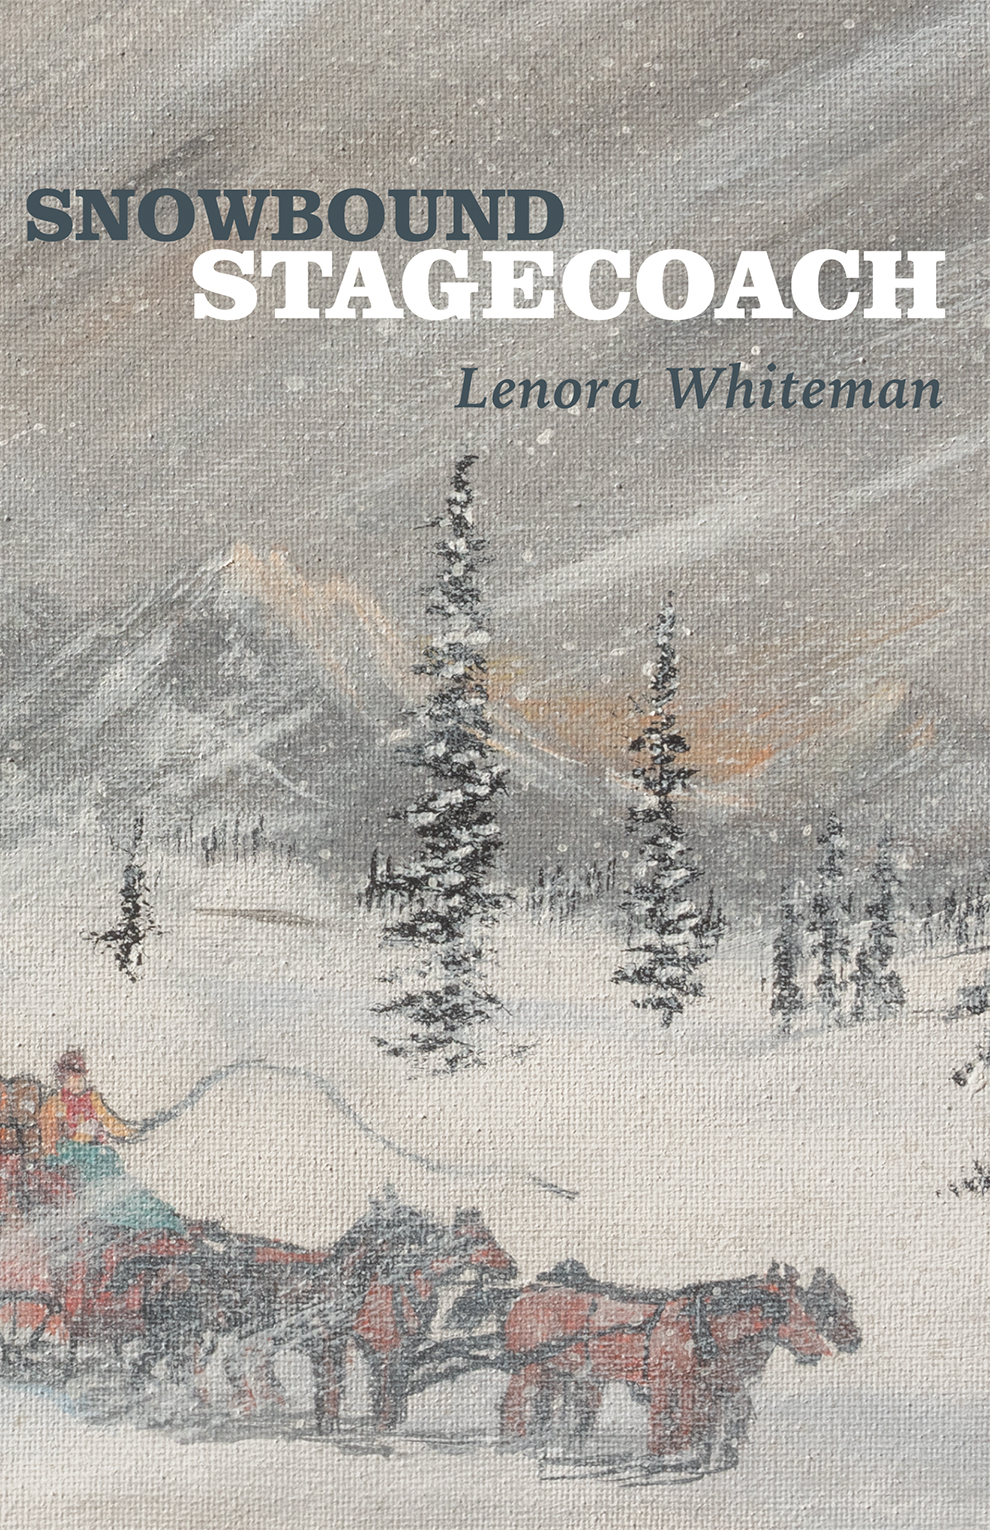 Snowbound Stagecoach by Lenora Whiteman